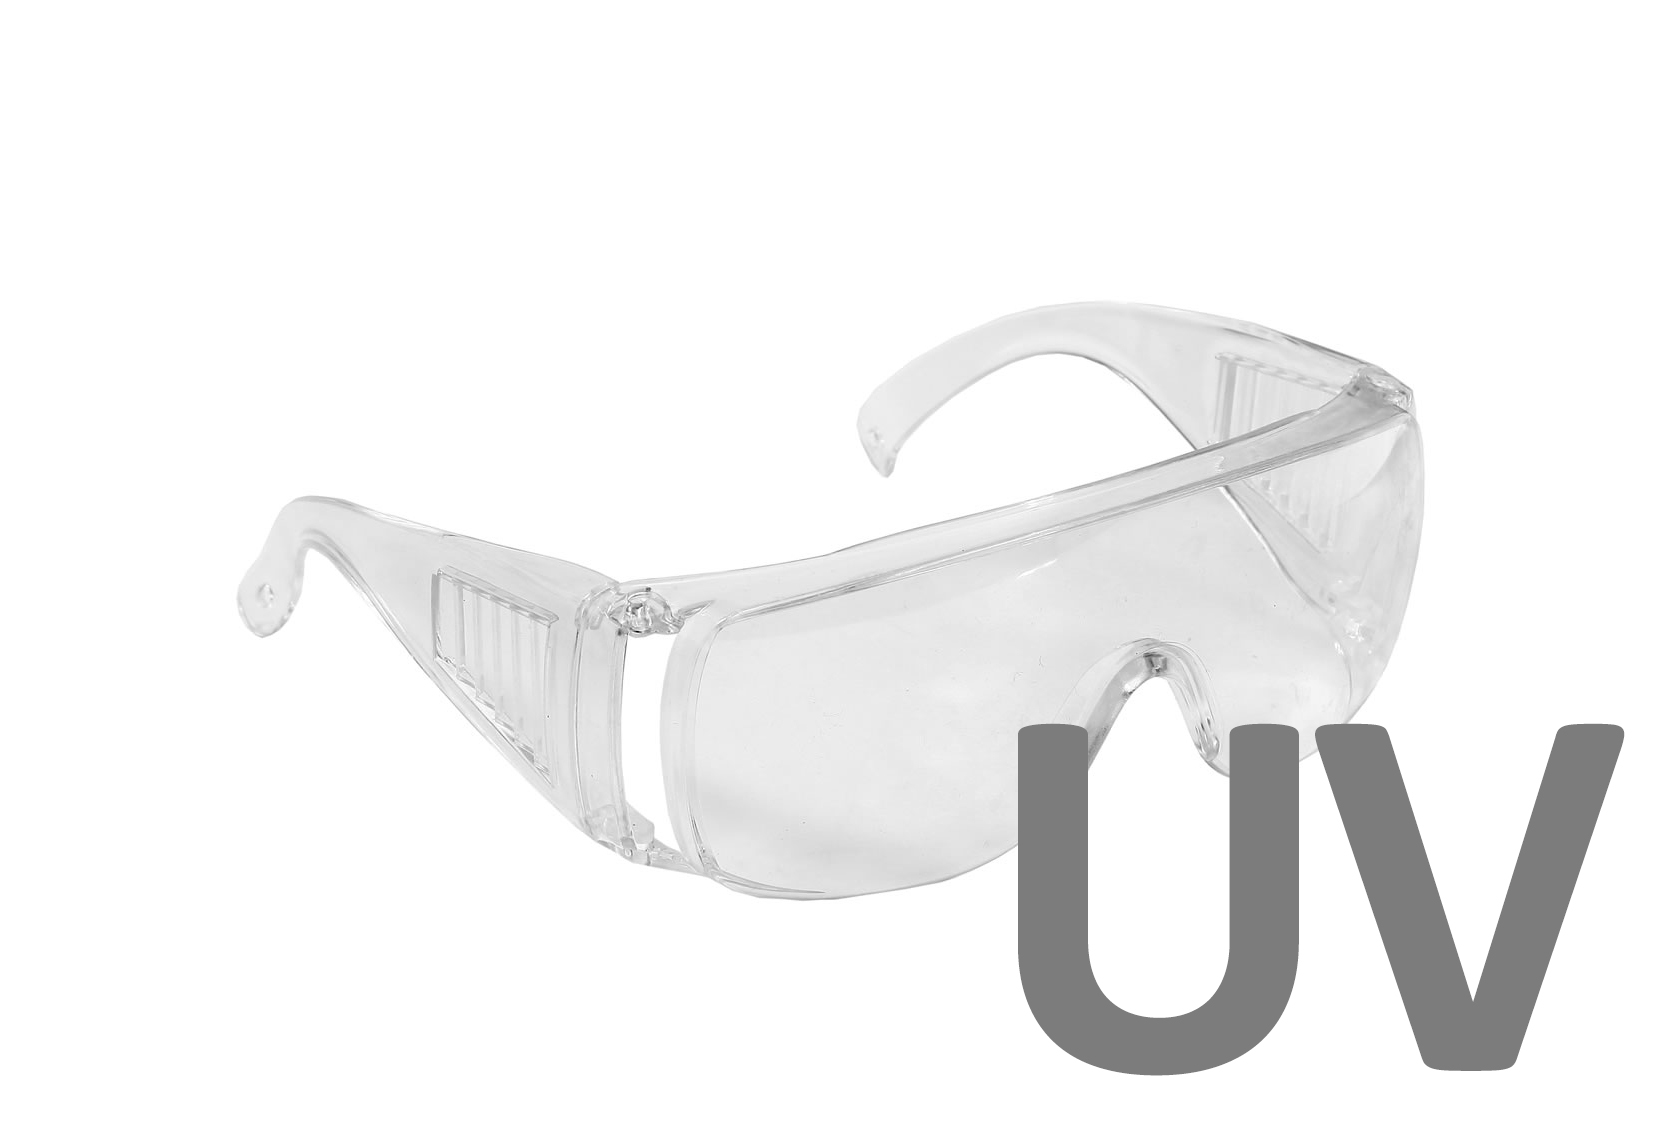 Laborbrille Modell "Eco" mit UV-Schutz